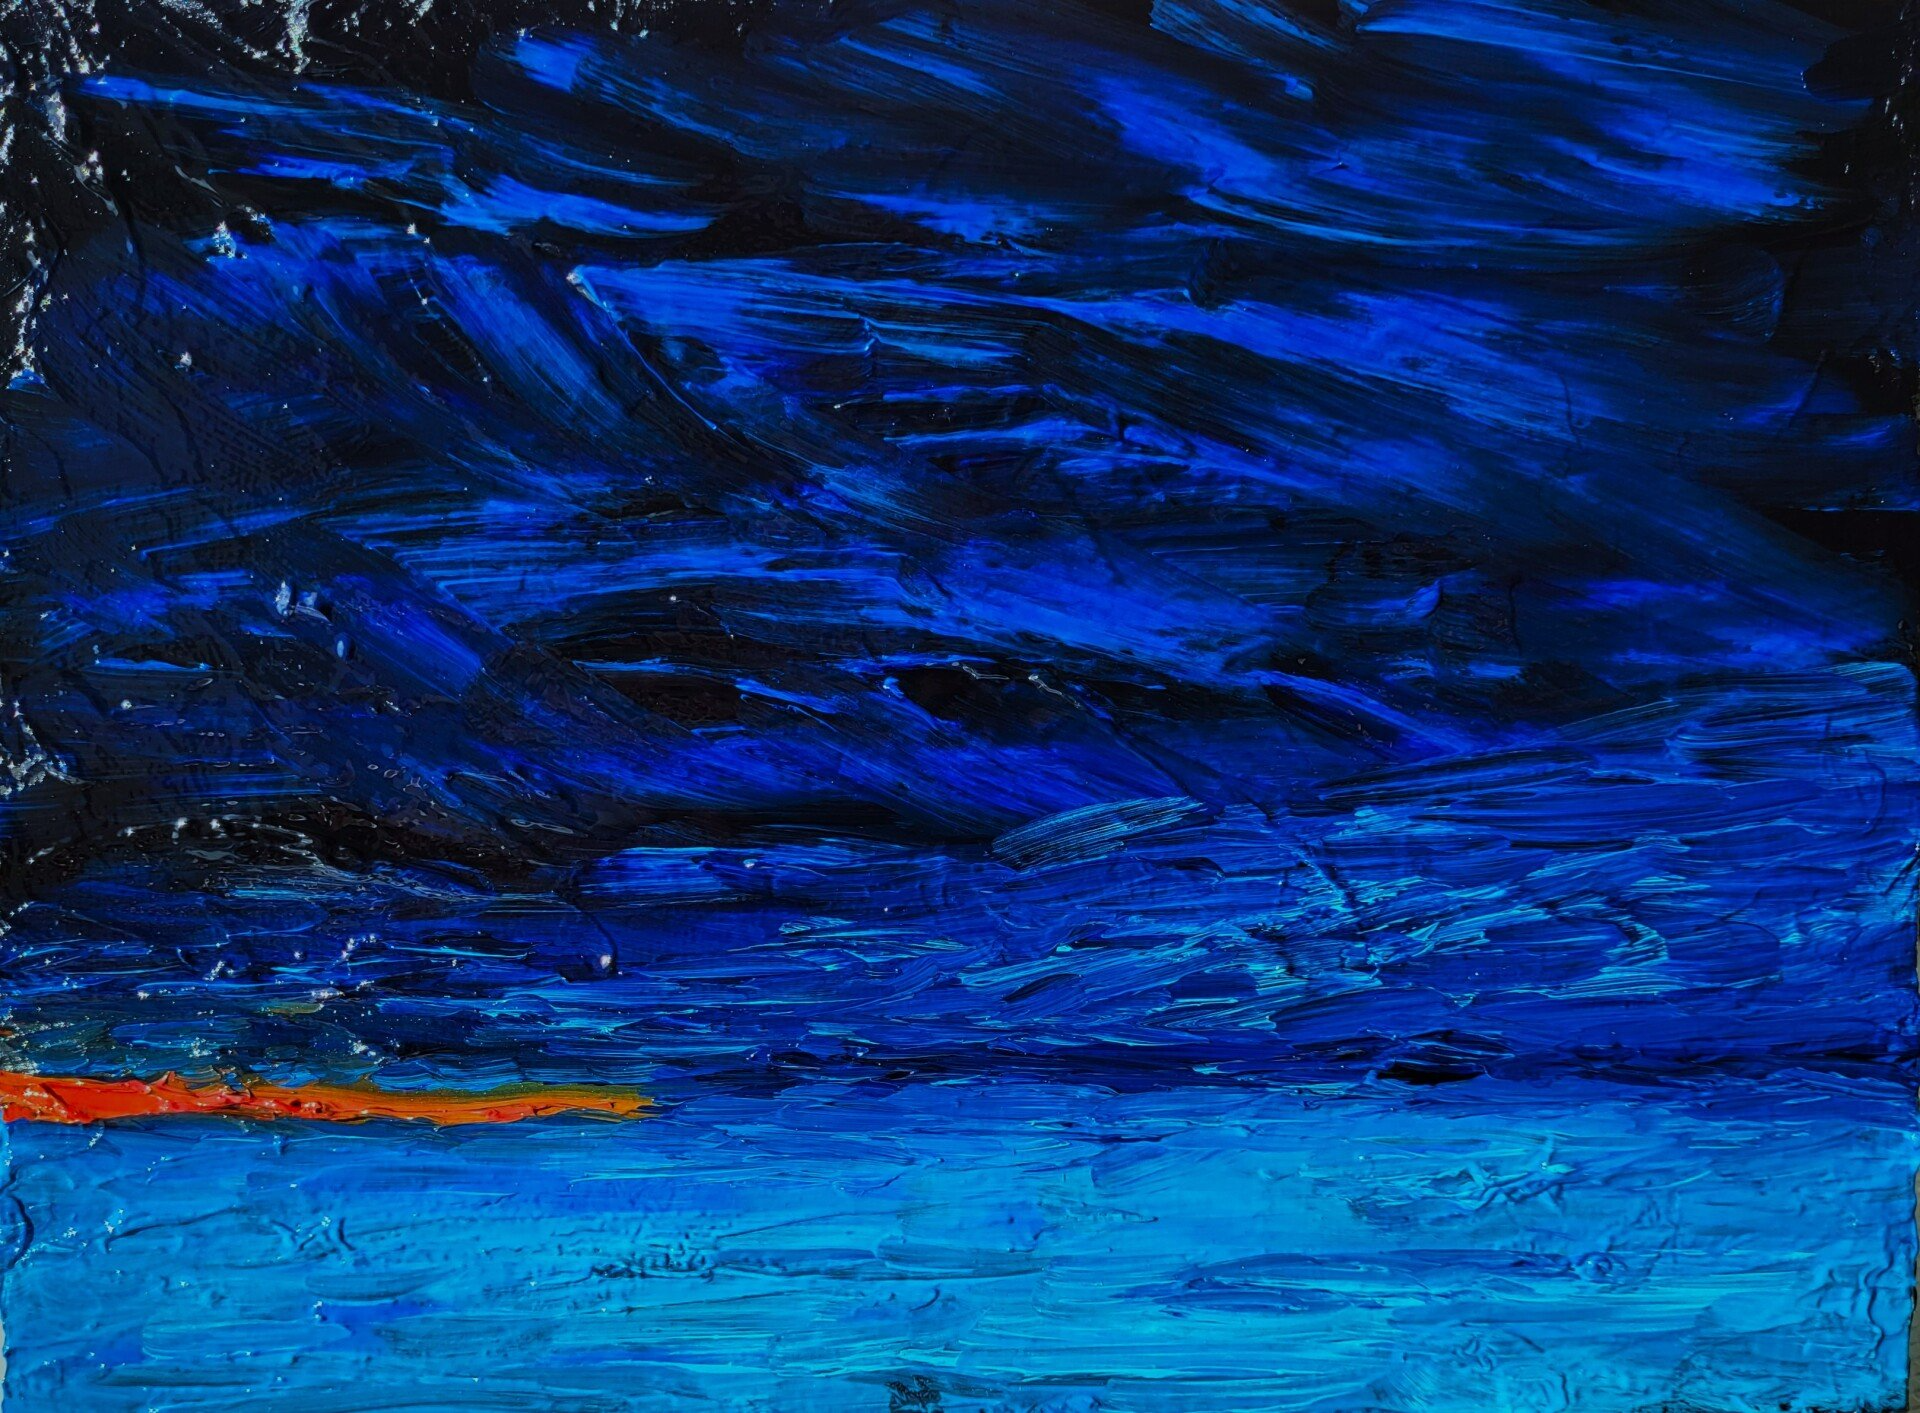 Le village, huile sur masonite 8 po x 6 po, est l'une des peintures que j'ai réalisées après une visite dans la région de Charlevoix au Québec, Canada. Bleus profonds riches (bleu manganèse Phitalo prussien) avec un éclat d'orange représentant les lumières du village de l'autre côté du lac.